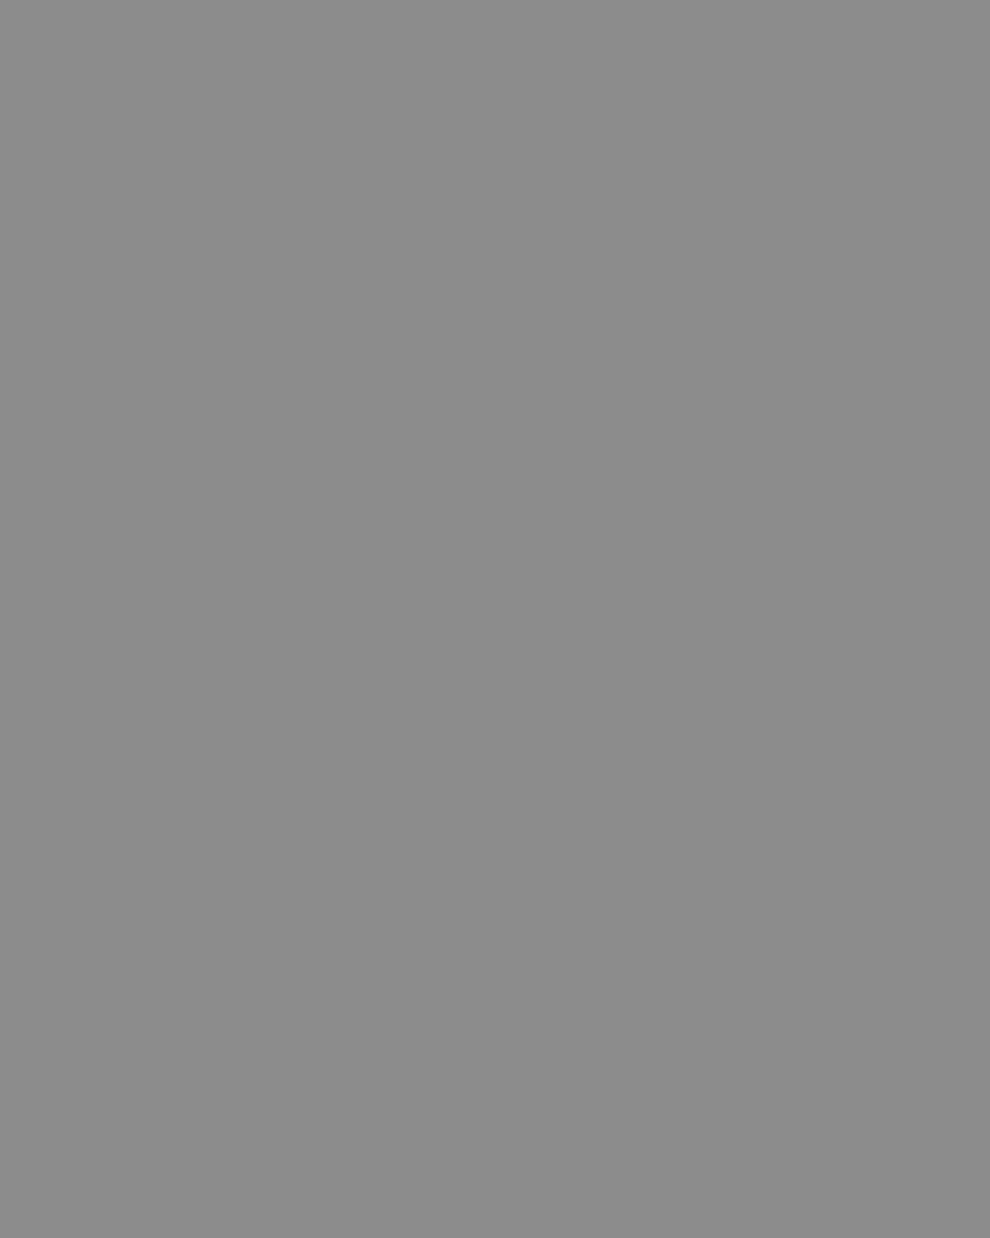 Натан Альтман. Николай Гоголь в Санкт-Петербурге (фрагмент). Иллюстрация к «Петербургским повестям» Николая Гоголя. 1934. Изображение: antik-dom.ru